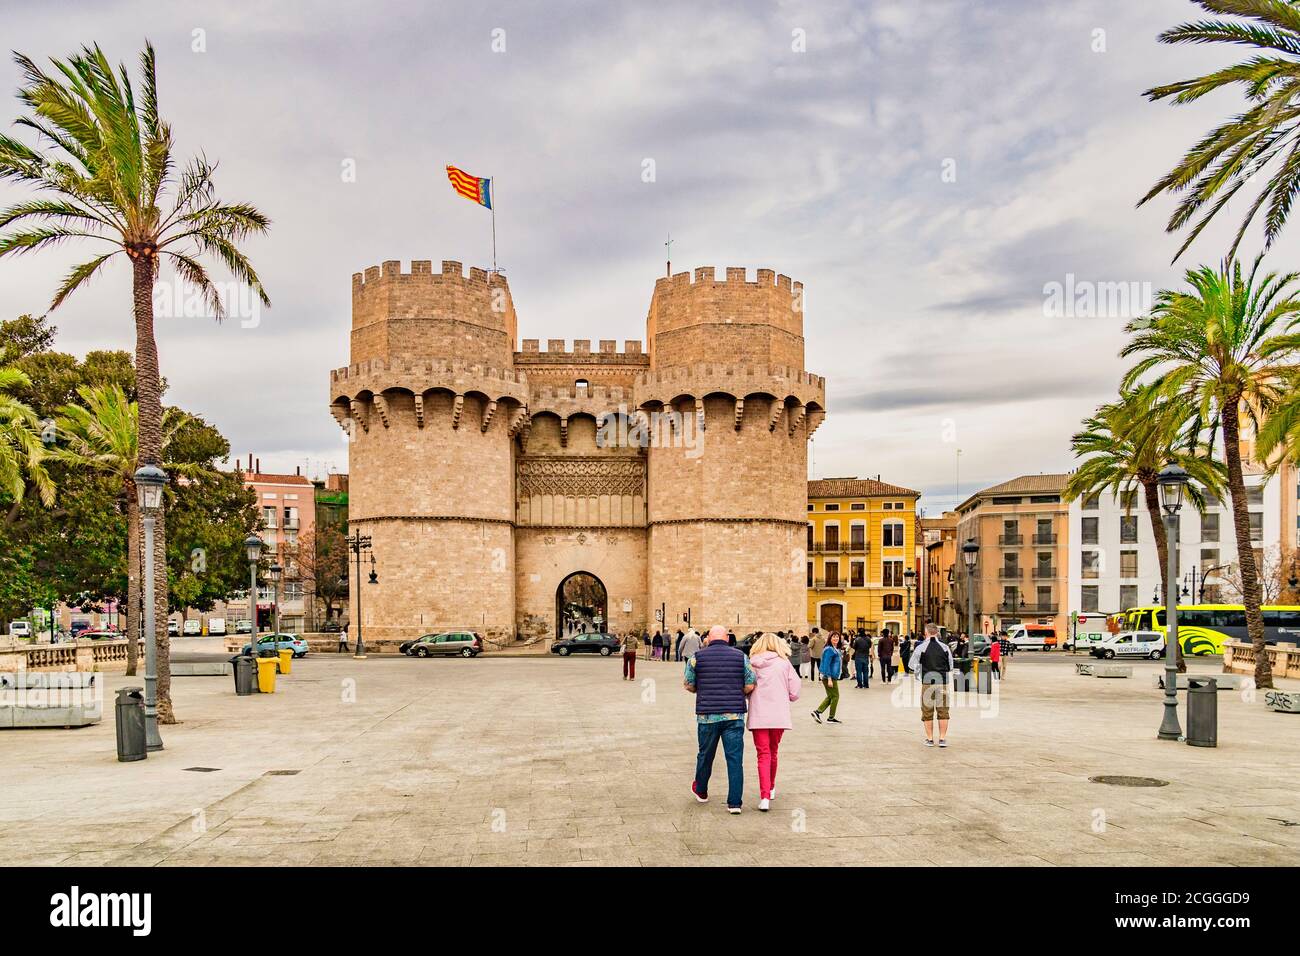 3 Mars 2020: Valence, Espagne - le Torres de Serranos ou Puerta de Serranos, la porte principale du XIVe siècle de la ville fortifiée de Valence dans le sud de SP Banque D'Images